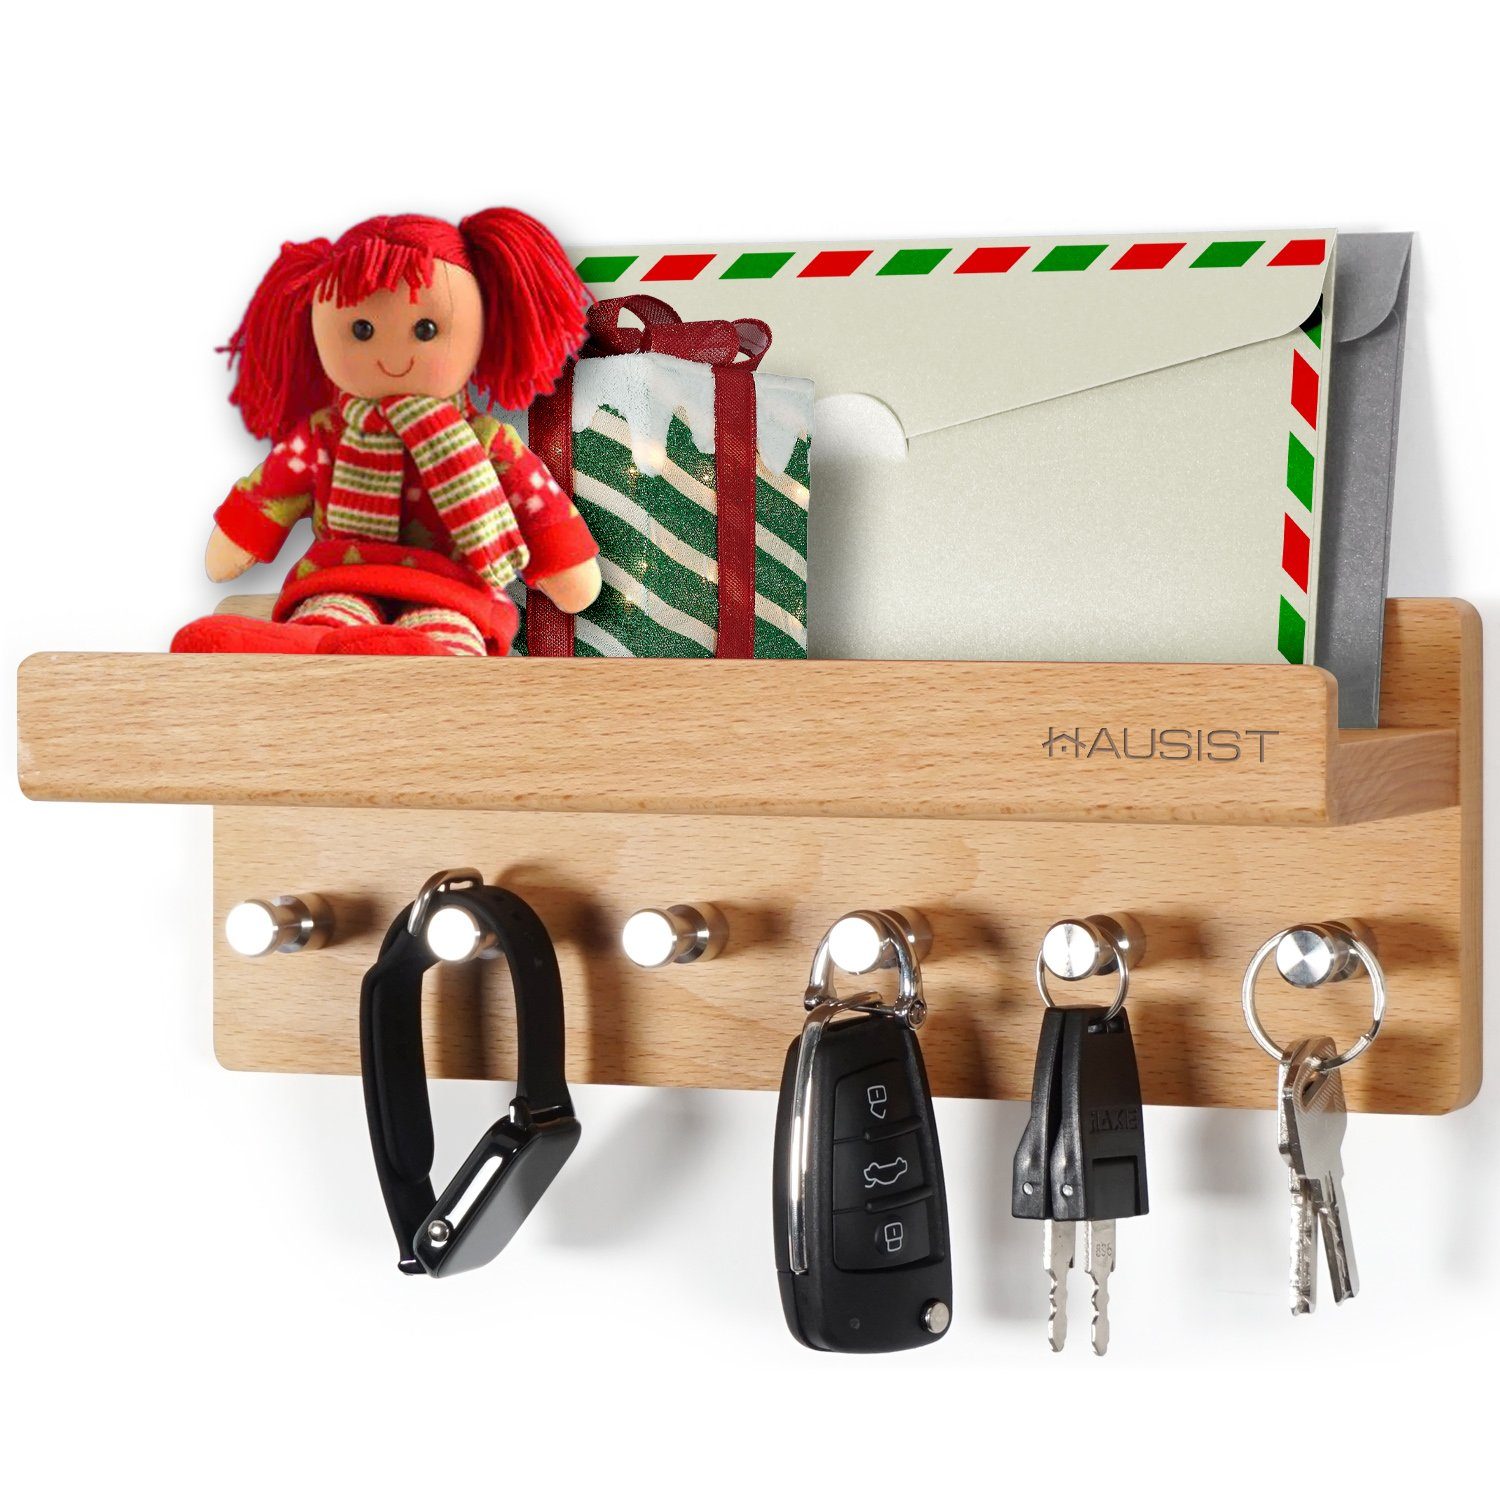 Schlüsselbrett aus Edelstahlhaken, schlüsselkasten HAUSIST Holz 6 Holz mit Schlüsselbrett Edelstahlhaken, mit Ablage Weihnachtsgeschenk mit